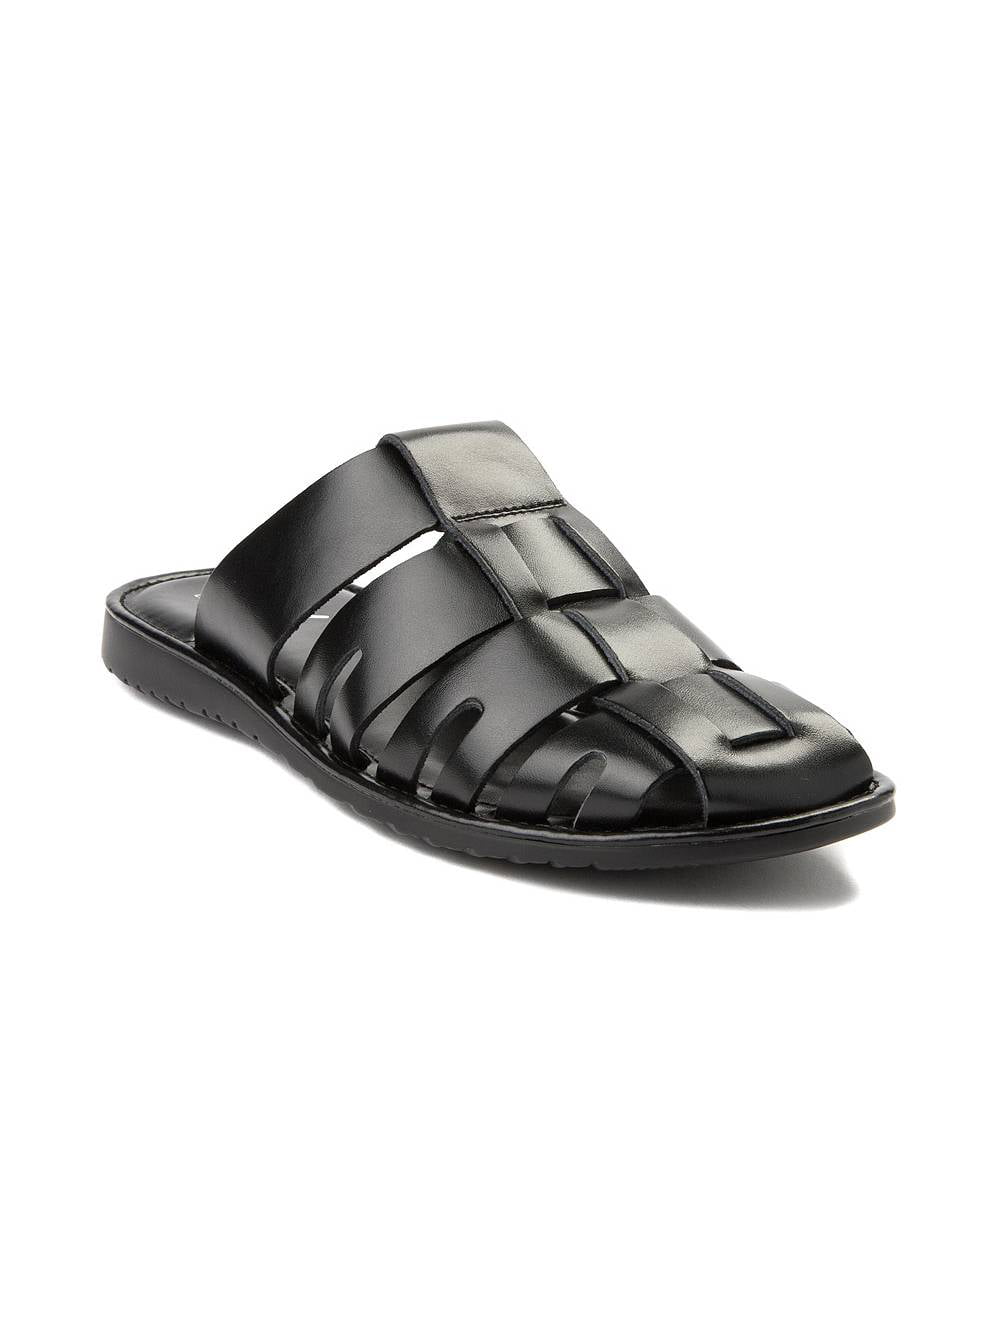 cloggs sandals